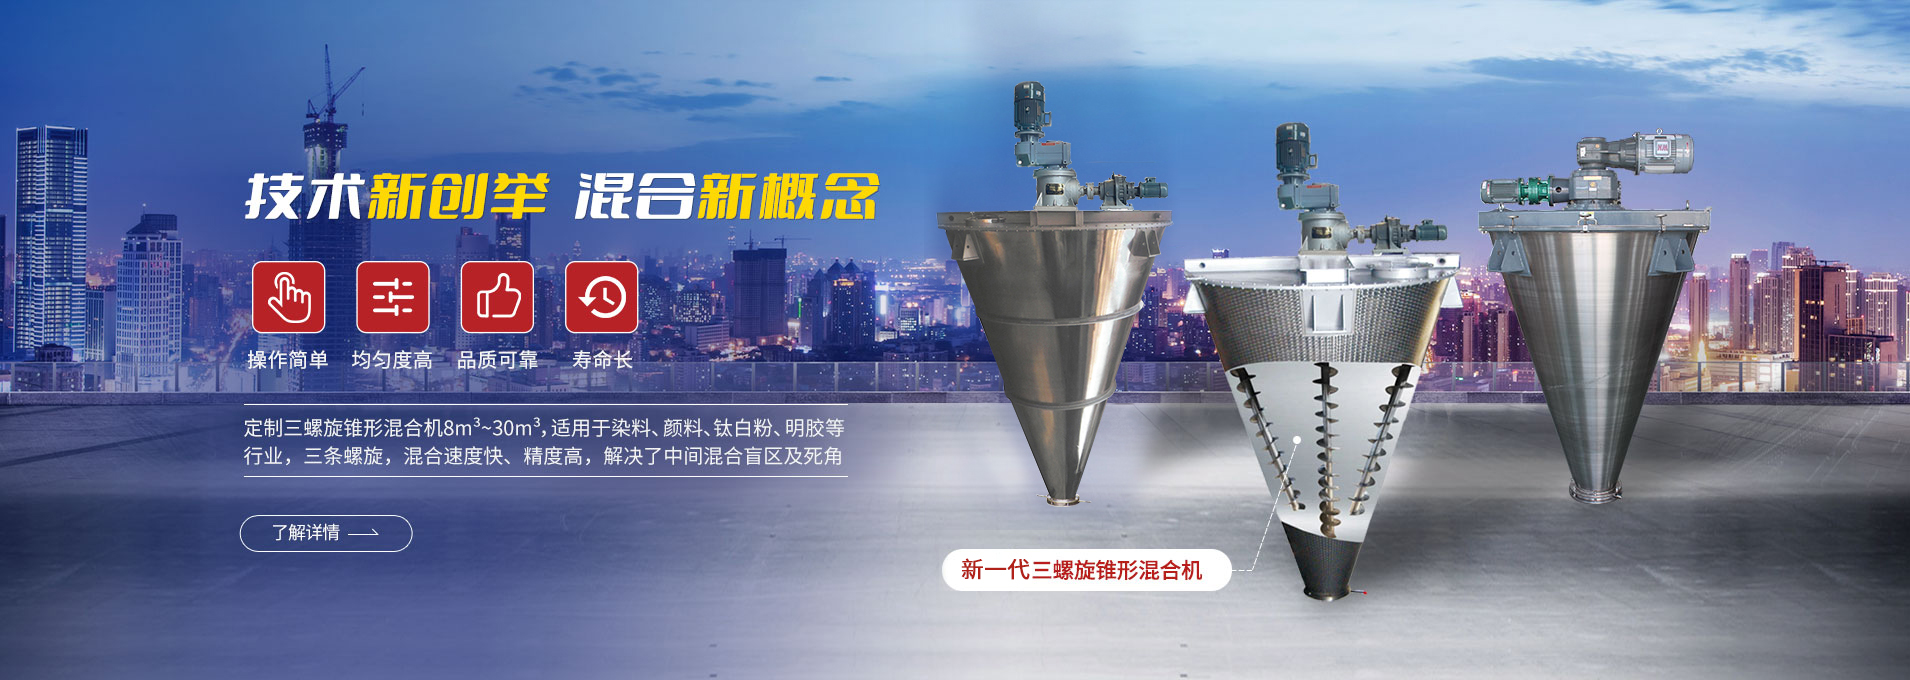 上海天博中国专注生产双/三螺旋锥形混合机、卧式螺带混合机、犁刀式合机、无重力混合机、螺带式锥形混合机、连续式混合机、混料机、搅拌机等产品。